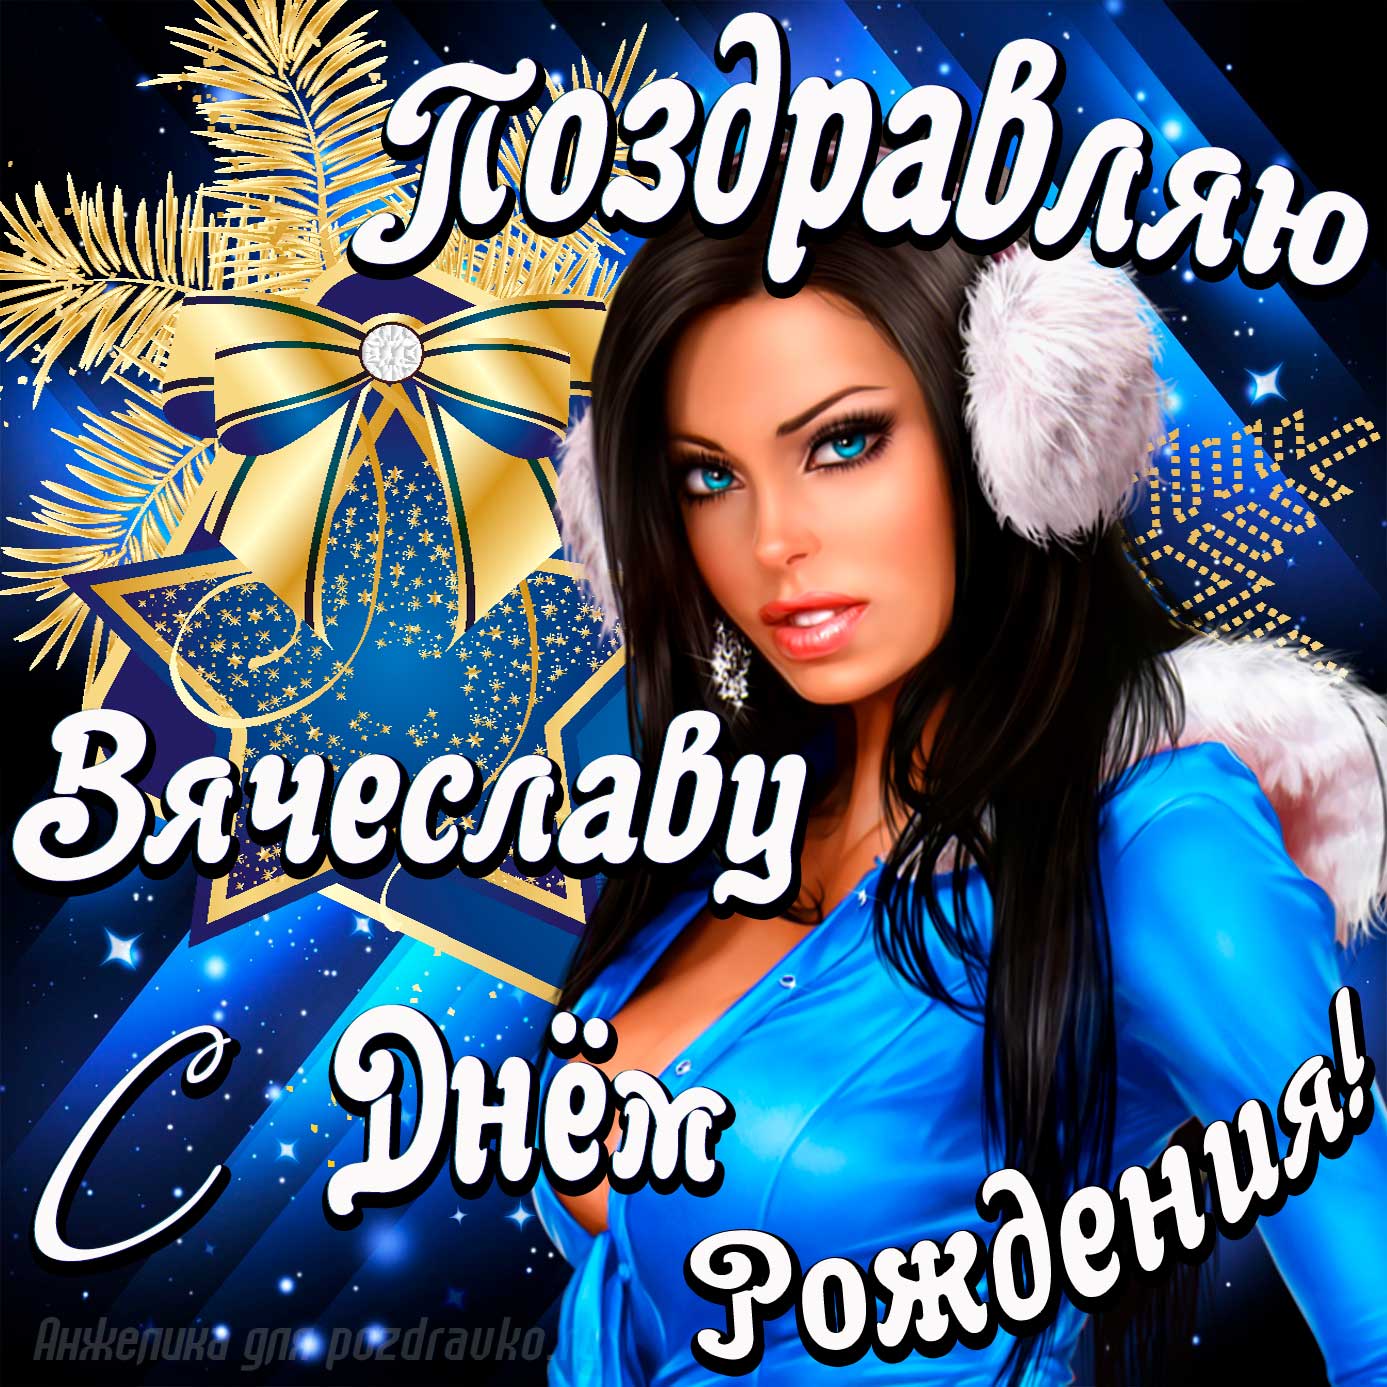 Открытка - поздравление Вячеславу с Днем Рождения с красивой девушкой. Скачать бесплатно или отправить картинку.